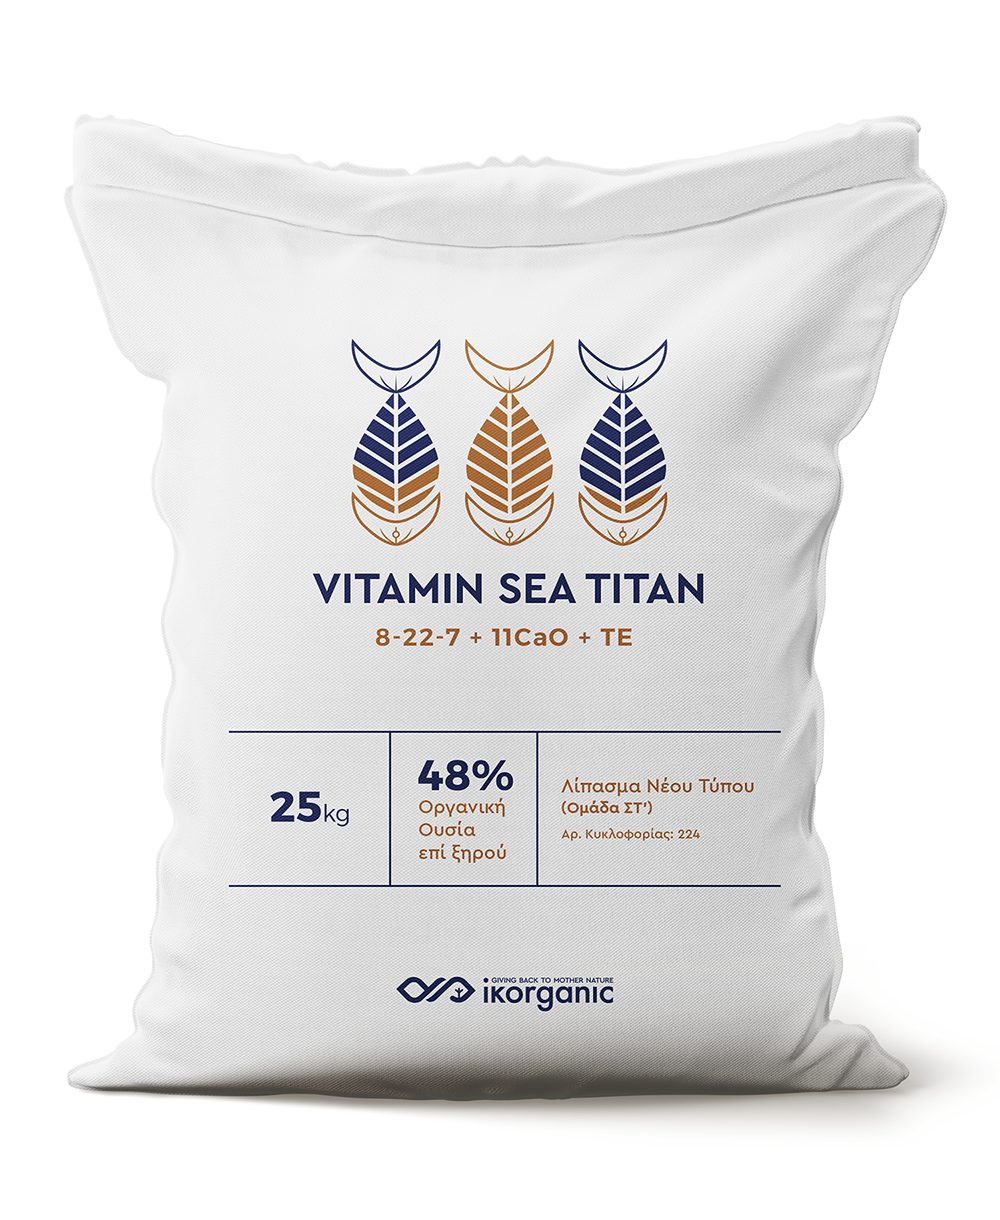 Vitamin Sea Titan 8-22-7